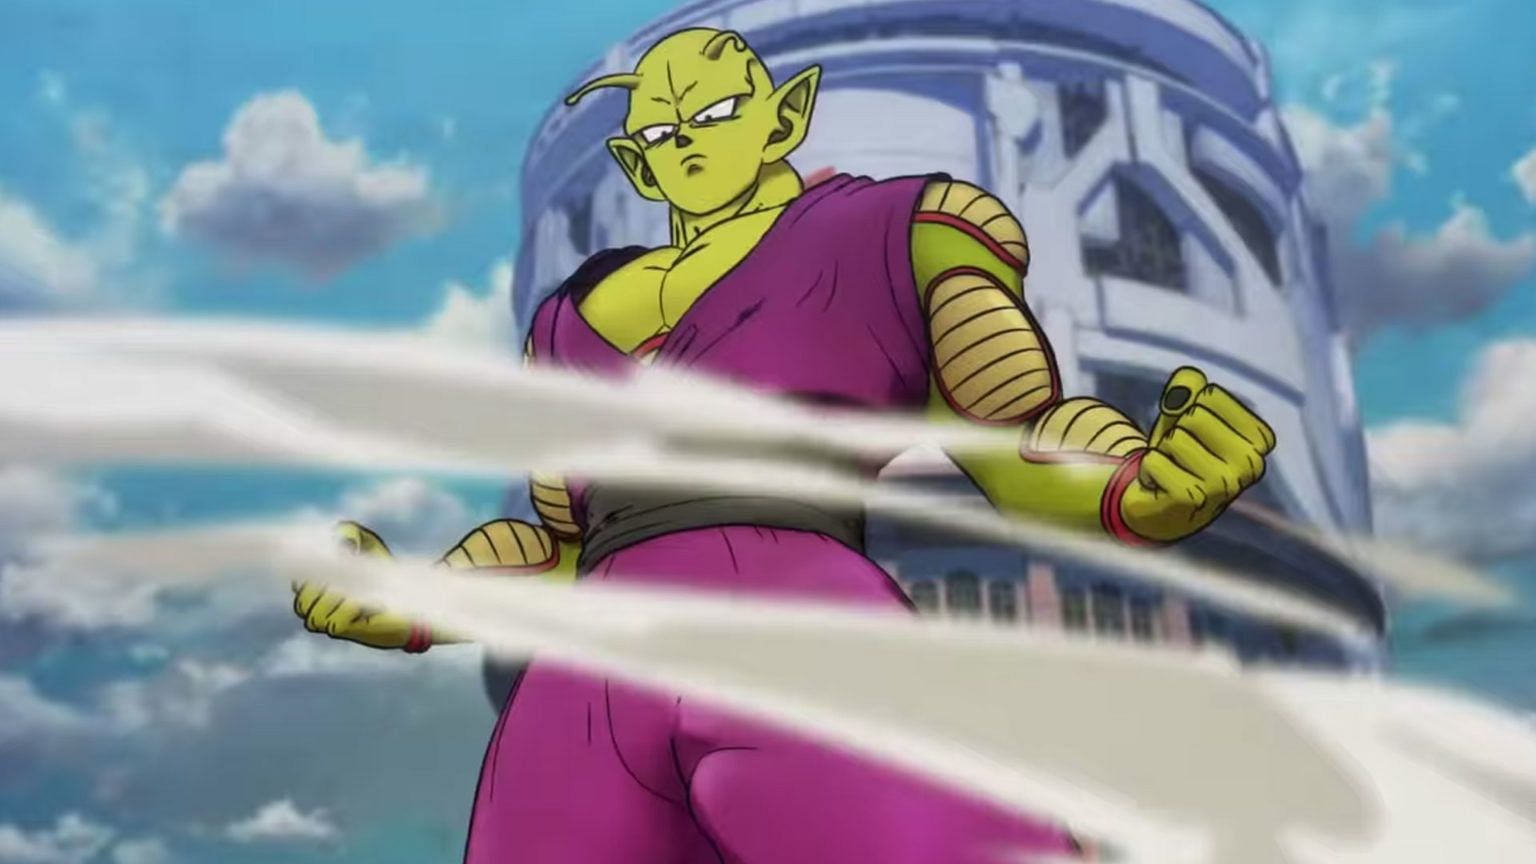 Piccolo during the new movie (Image via Akira Toriyama/Shueshia, Viz Media, Dragon Ball Super: Super Hero)